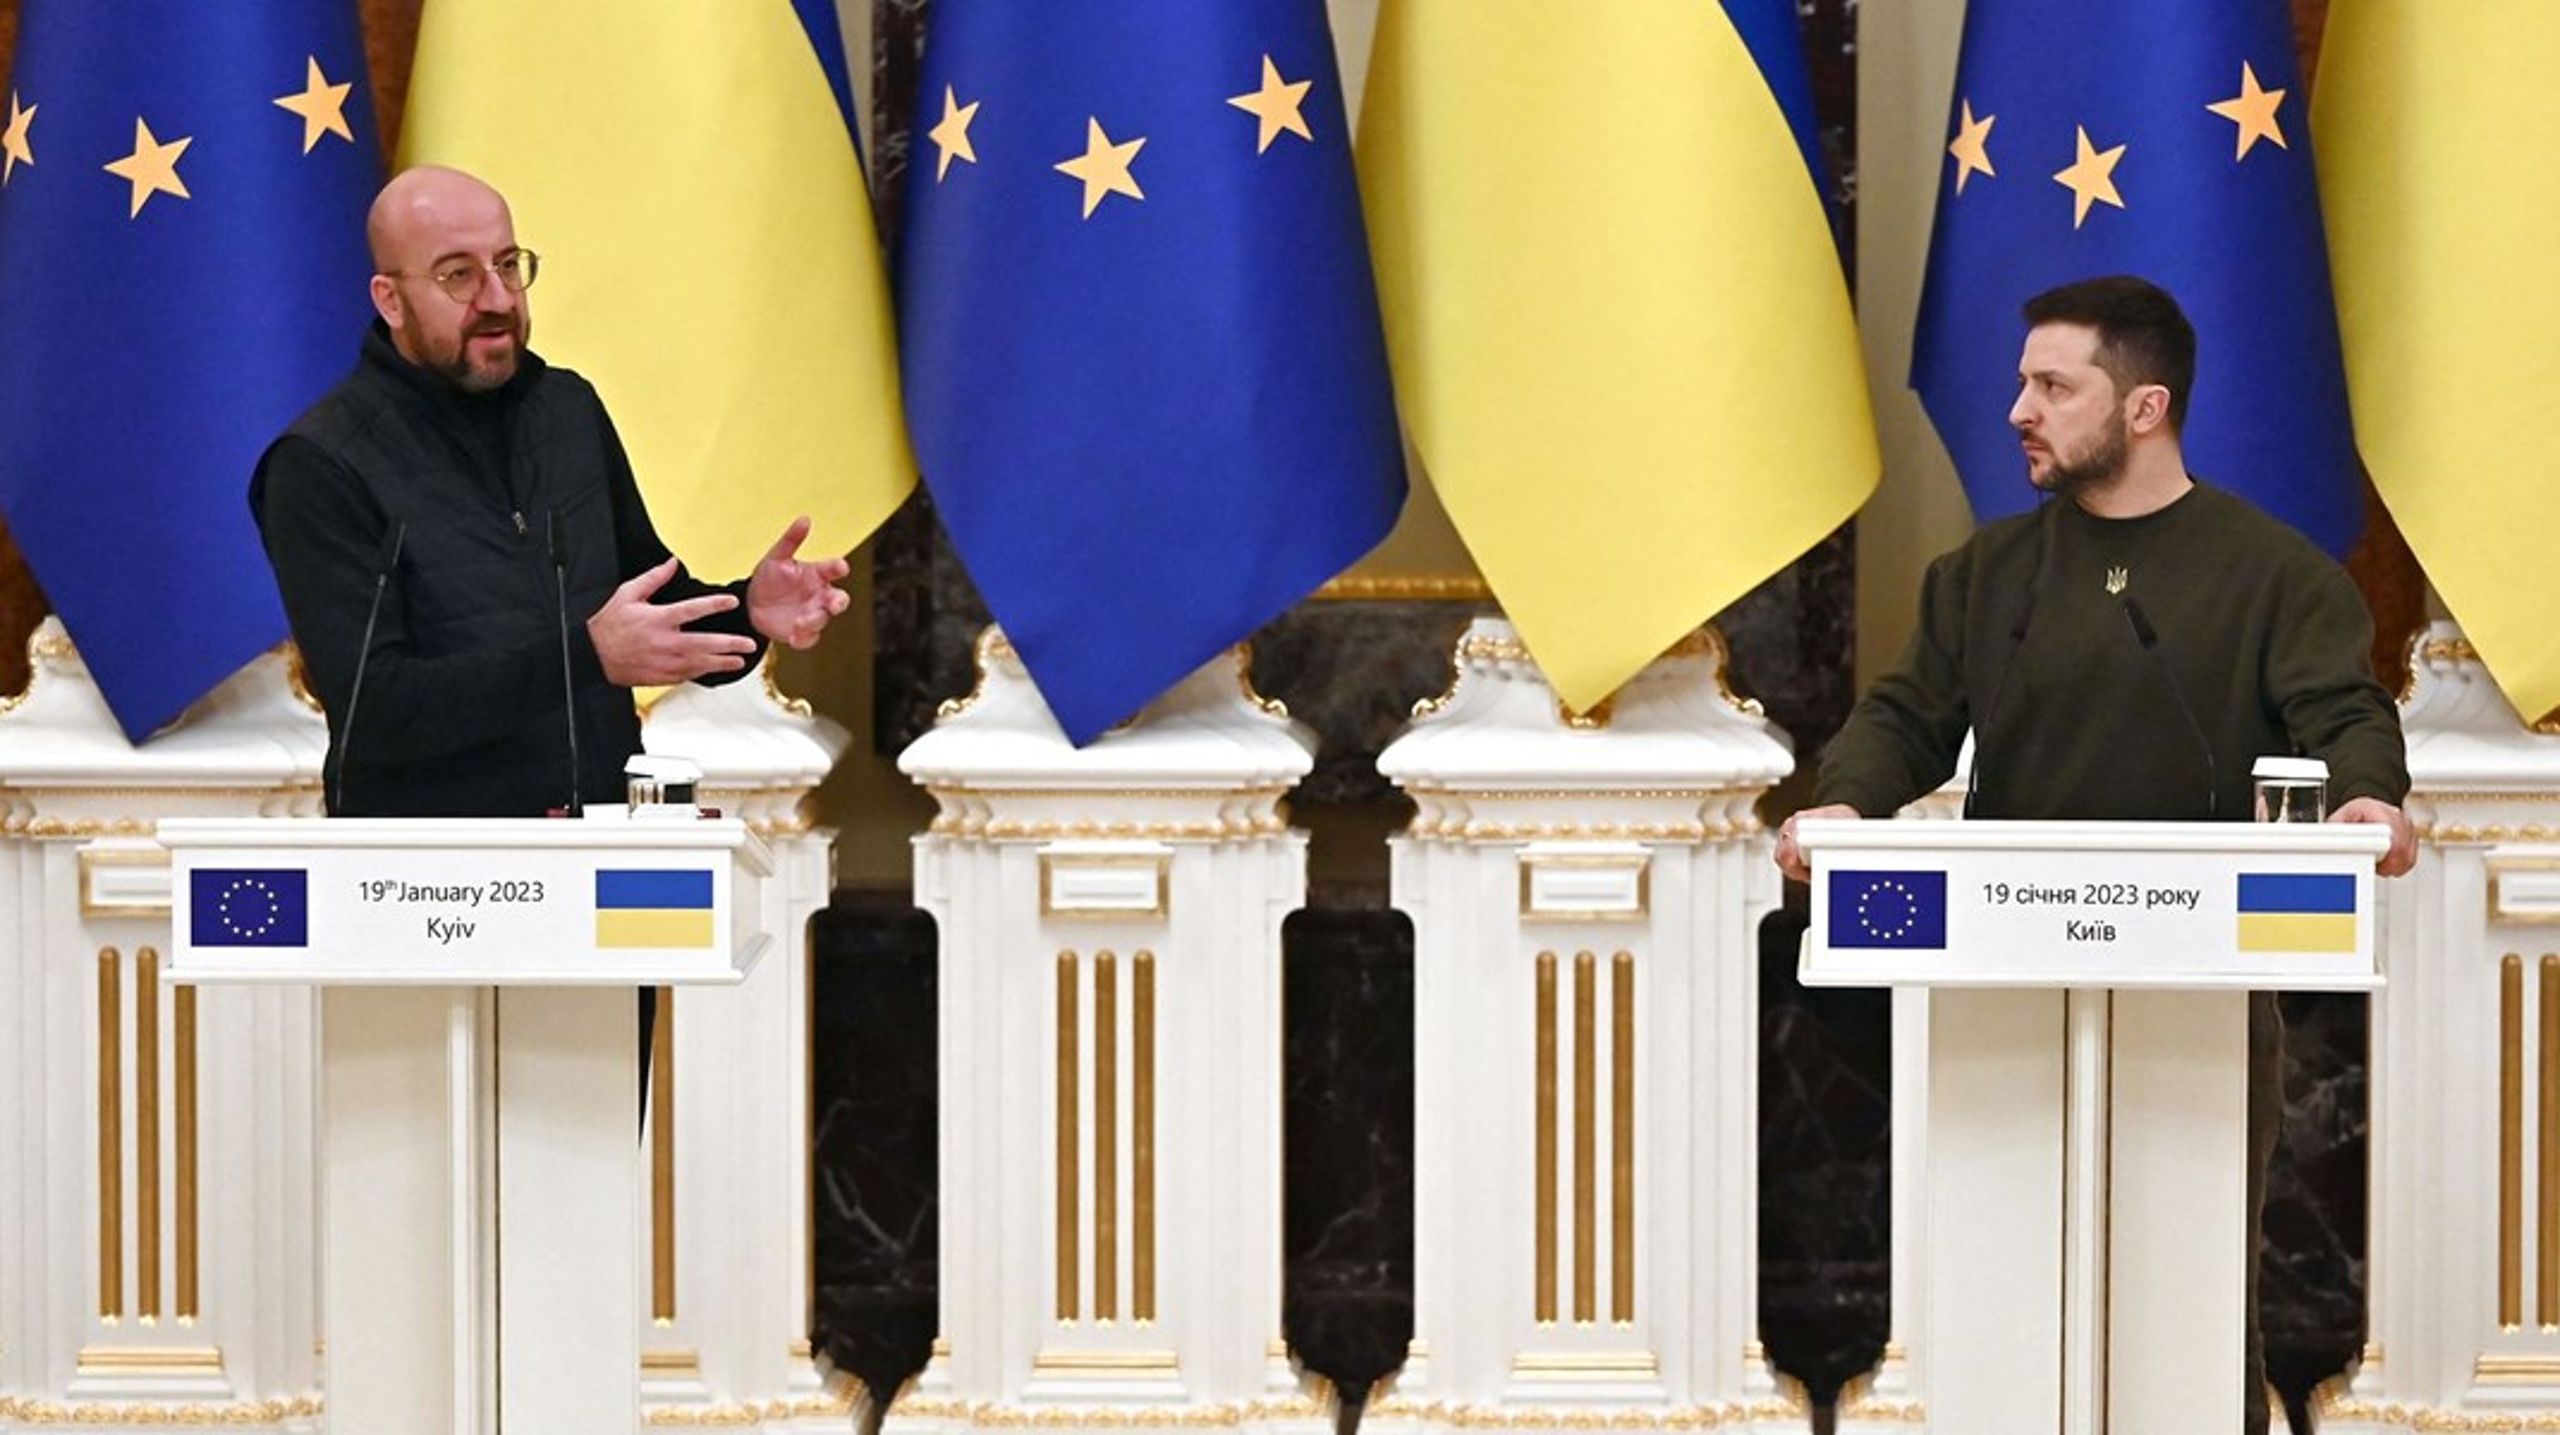 Tidligere i januar&nbsp;var EU-formanden for Det Europæiske Råd, Charles Michel, i Kyiv. Nu kommer han igen sammen med EU-kommissionsformand Ursula von der Leyen til det første officielle EU-Ukraine-topmøde siden krigens start.